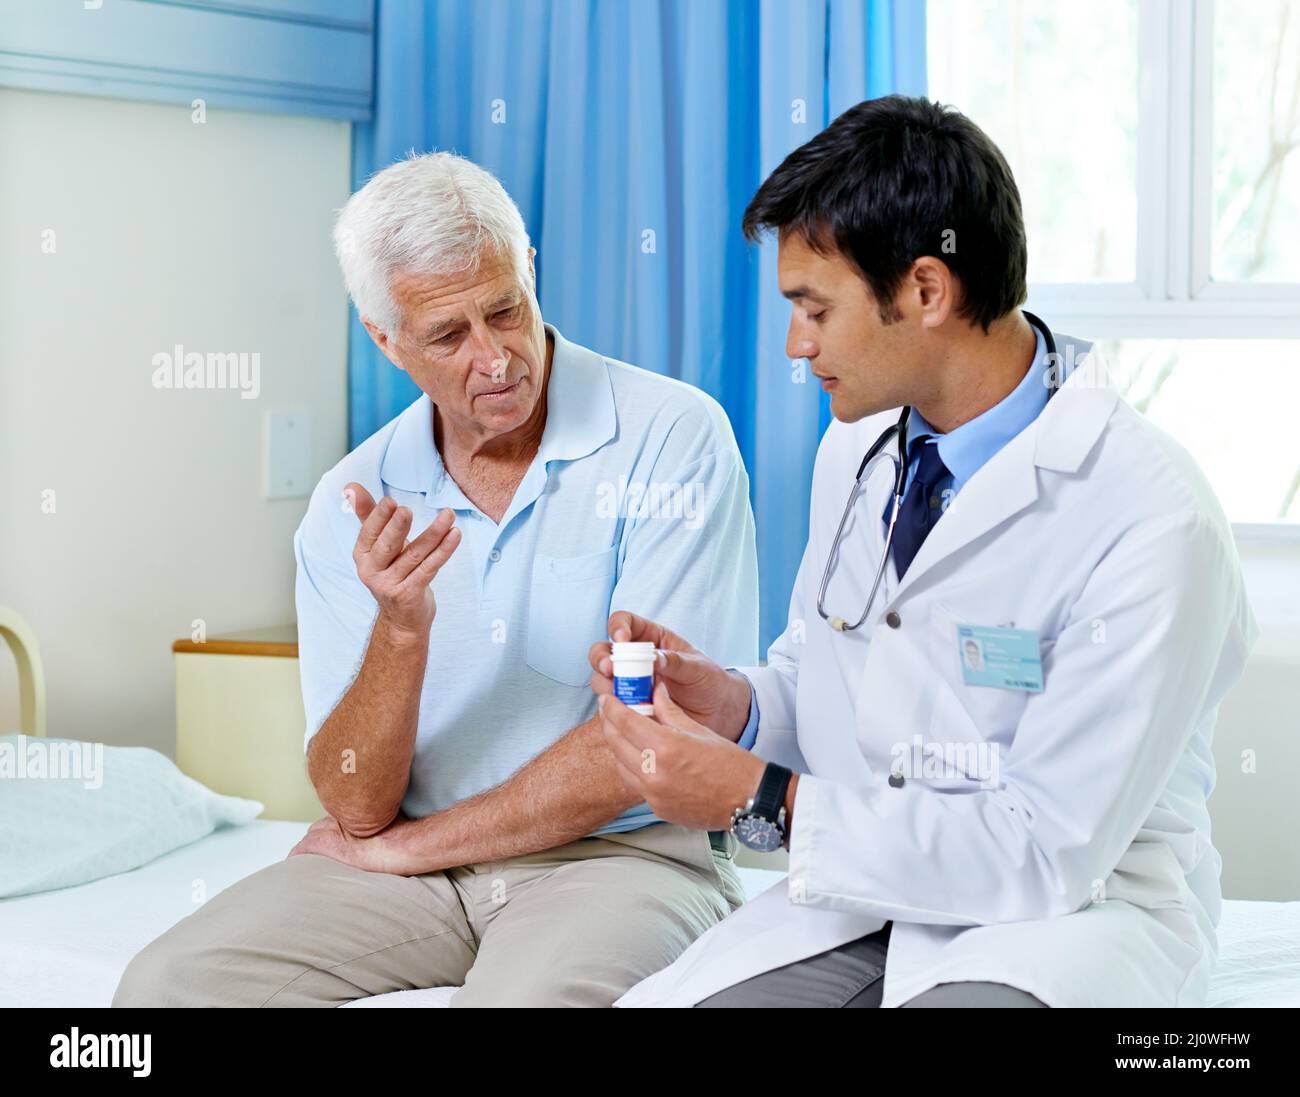 Basta prenderne uno al giorno. Shot di un bel medico giovane che spiega il farmaco ad un paziente anziano. Foto Stock